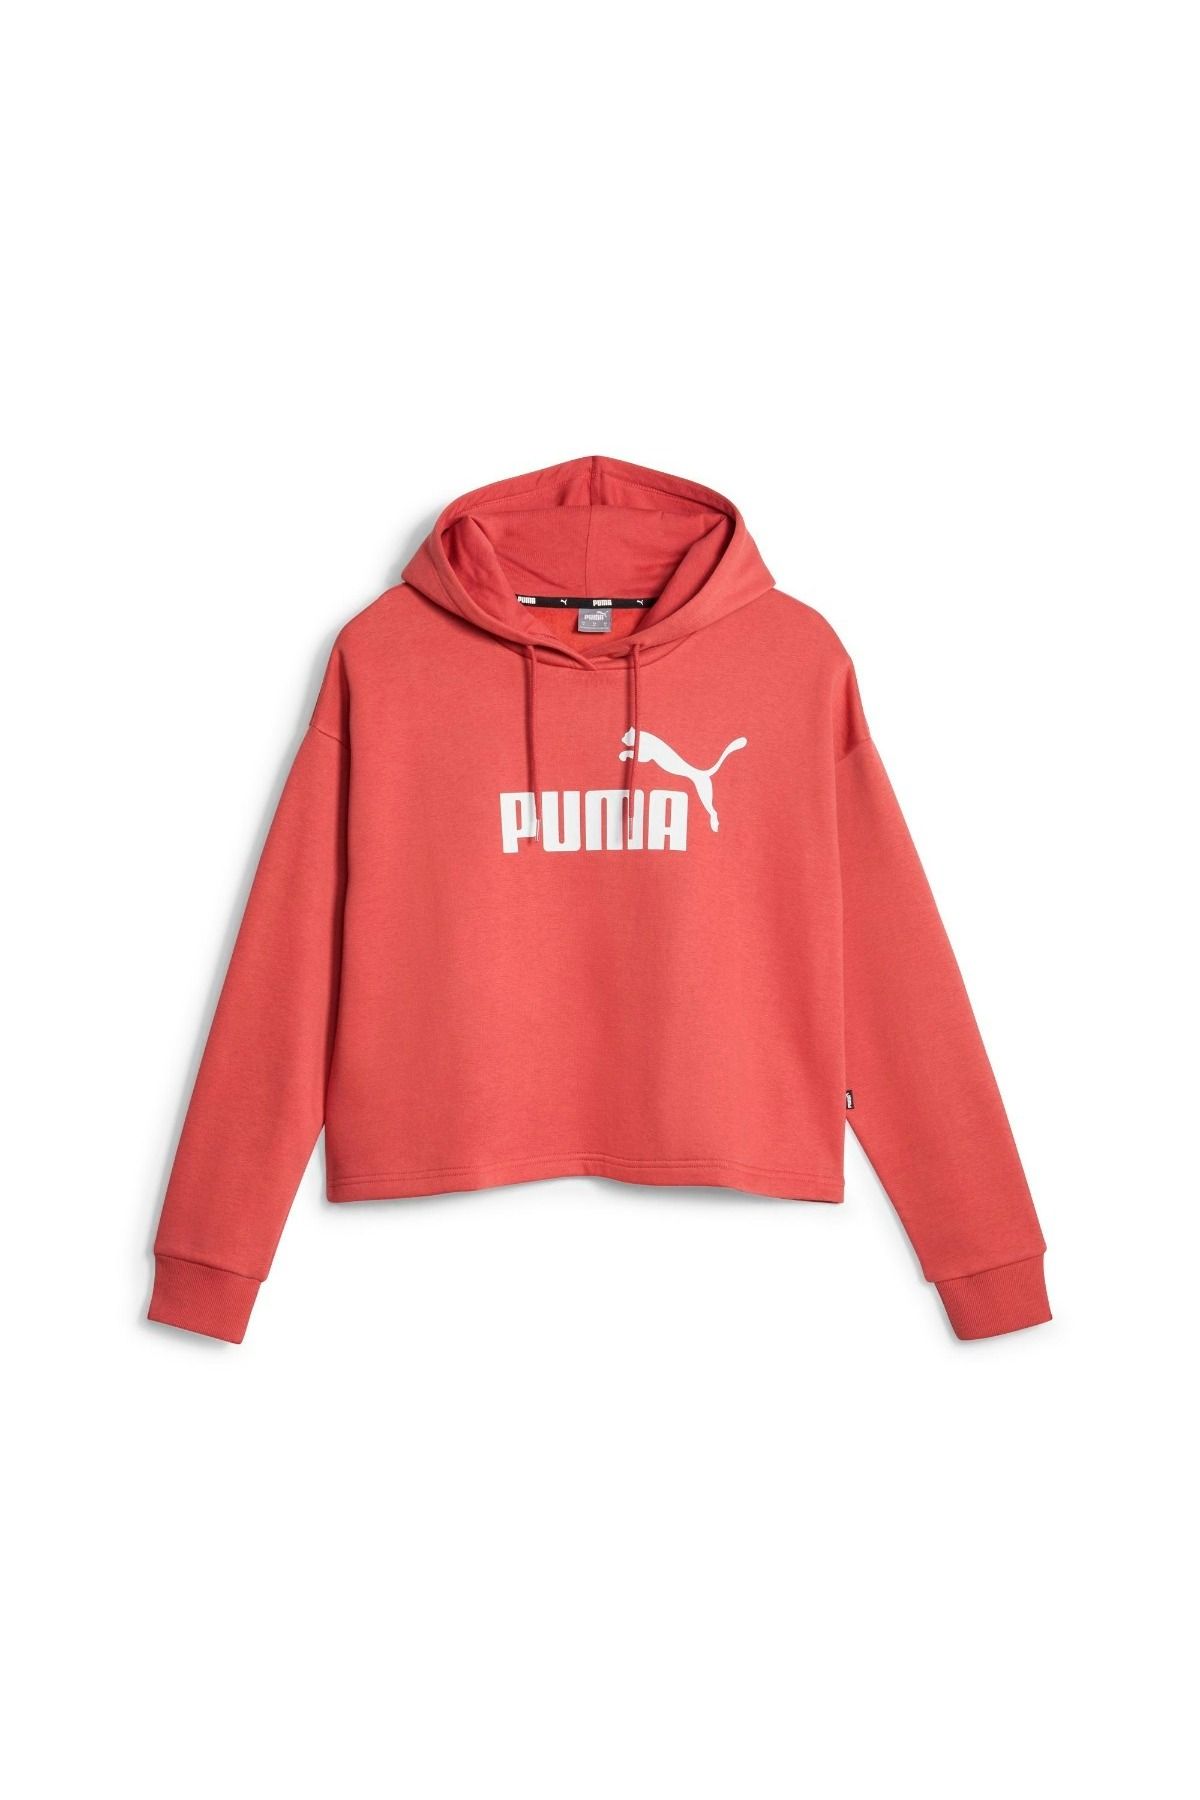 Puma Essentials Cropped Logo Fl Kadın Kırmızı Kapüşonlu Sweatshirt